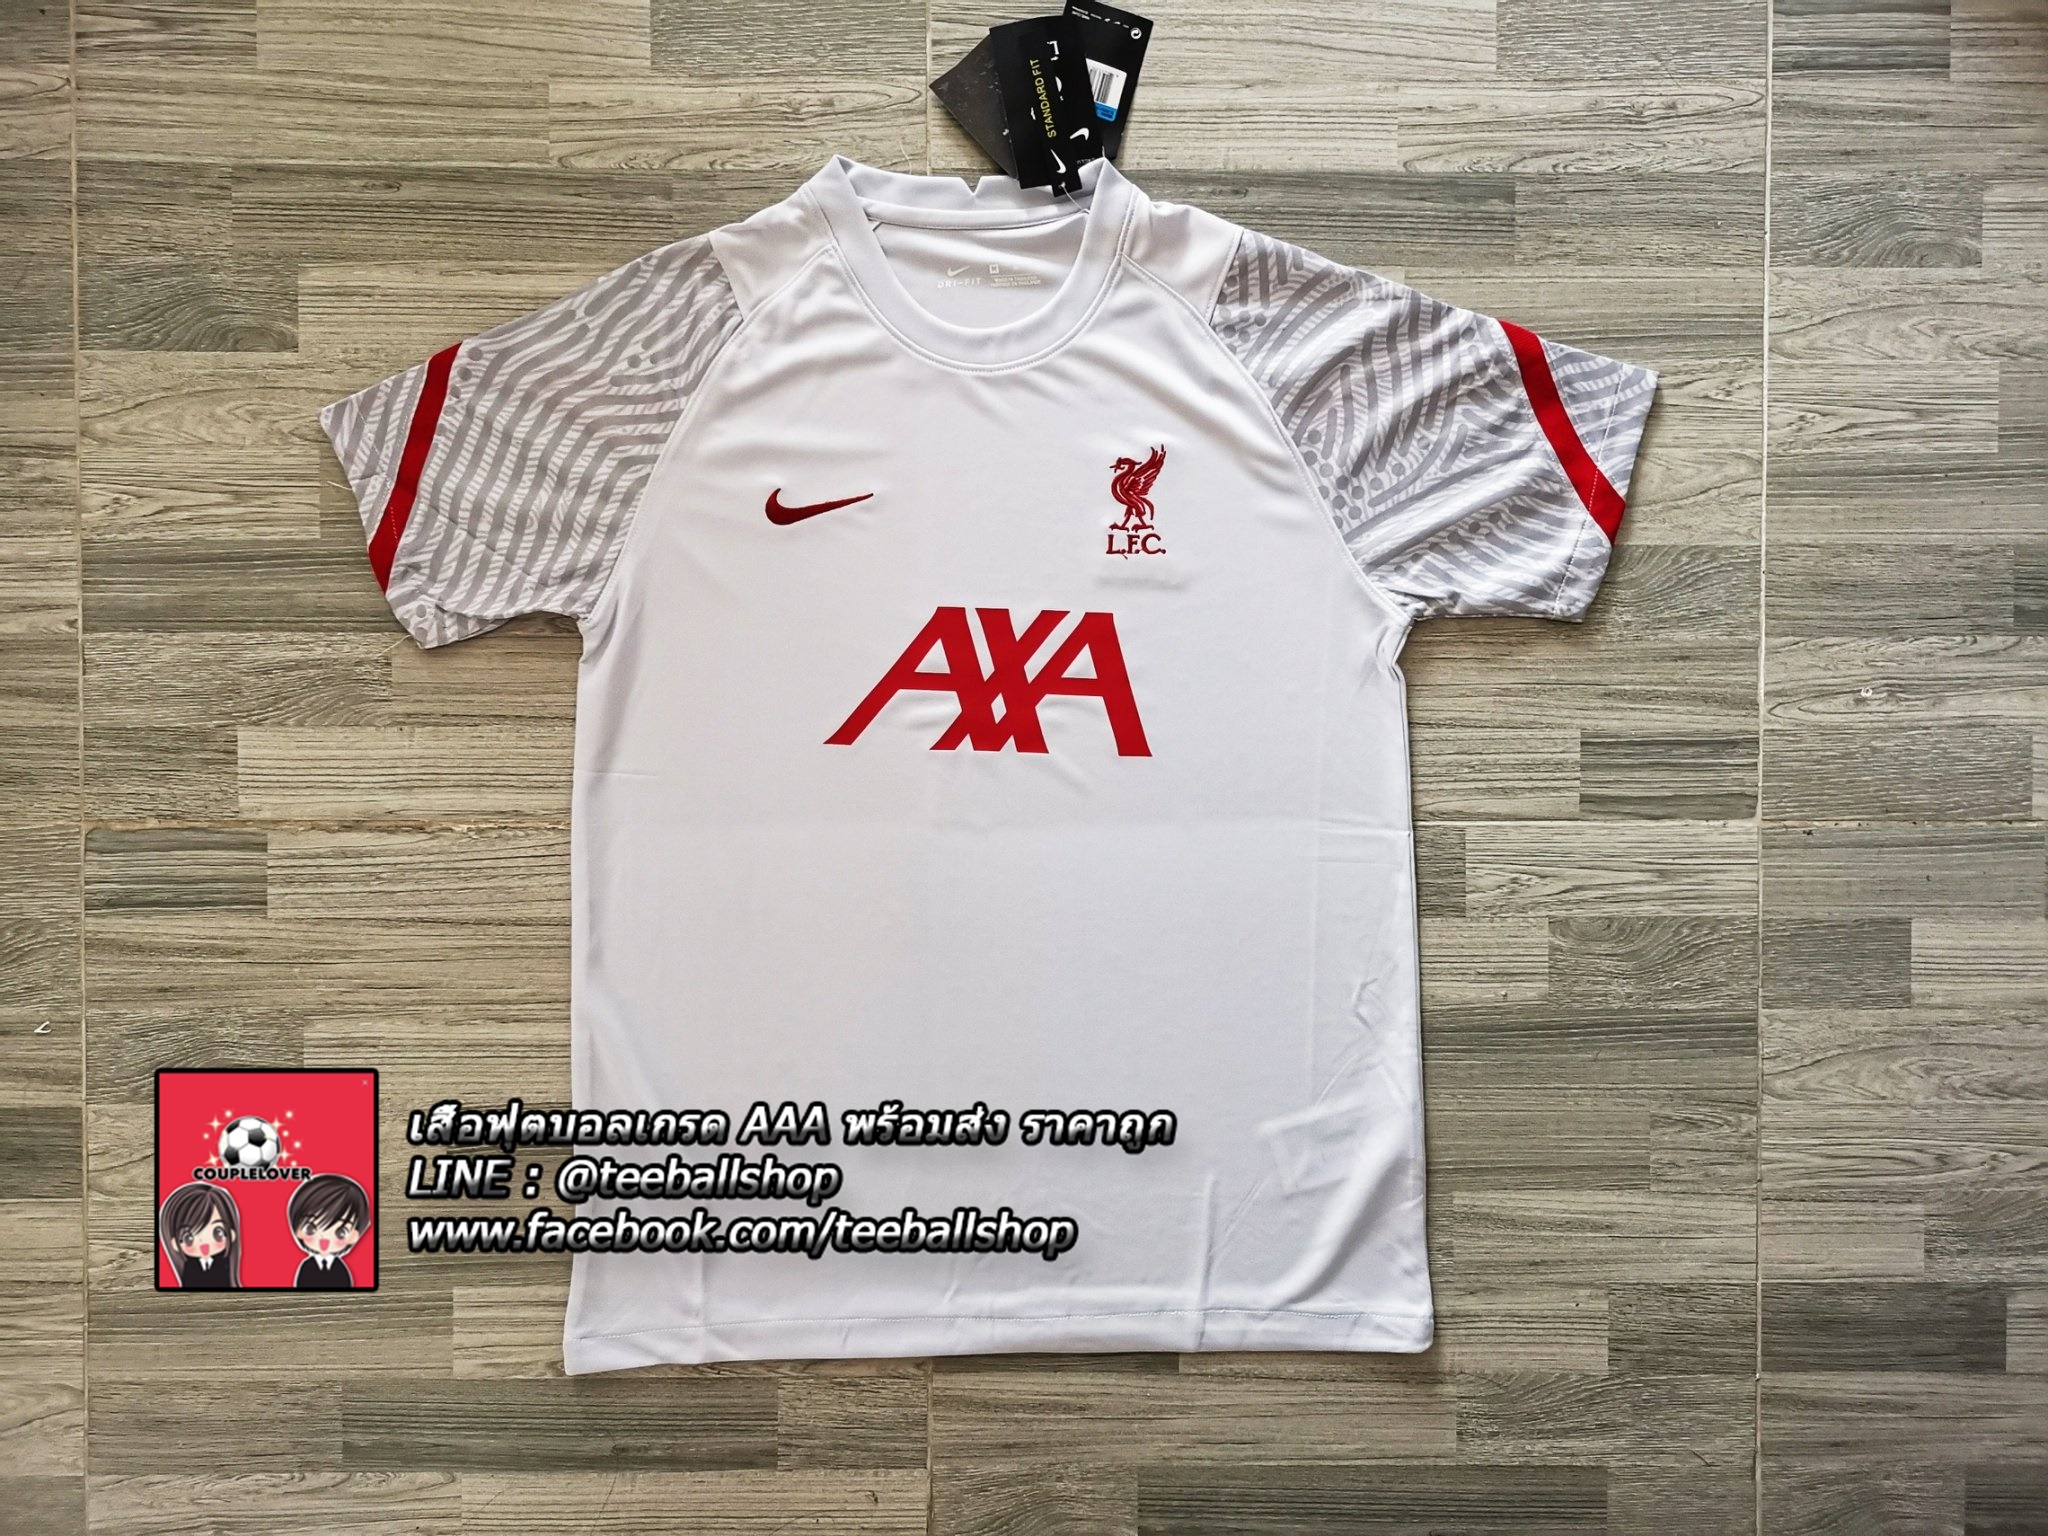 เสื้อฟุตบอลลิเวอร์พูล ชุดซ้อมขาว ปี 2020/21 เวอร์ชั่นแฟนบอล Liverpool White Training Jeresy 2020/21 (AAA)